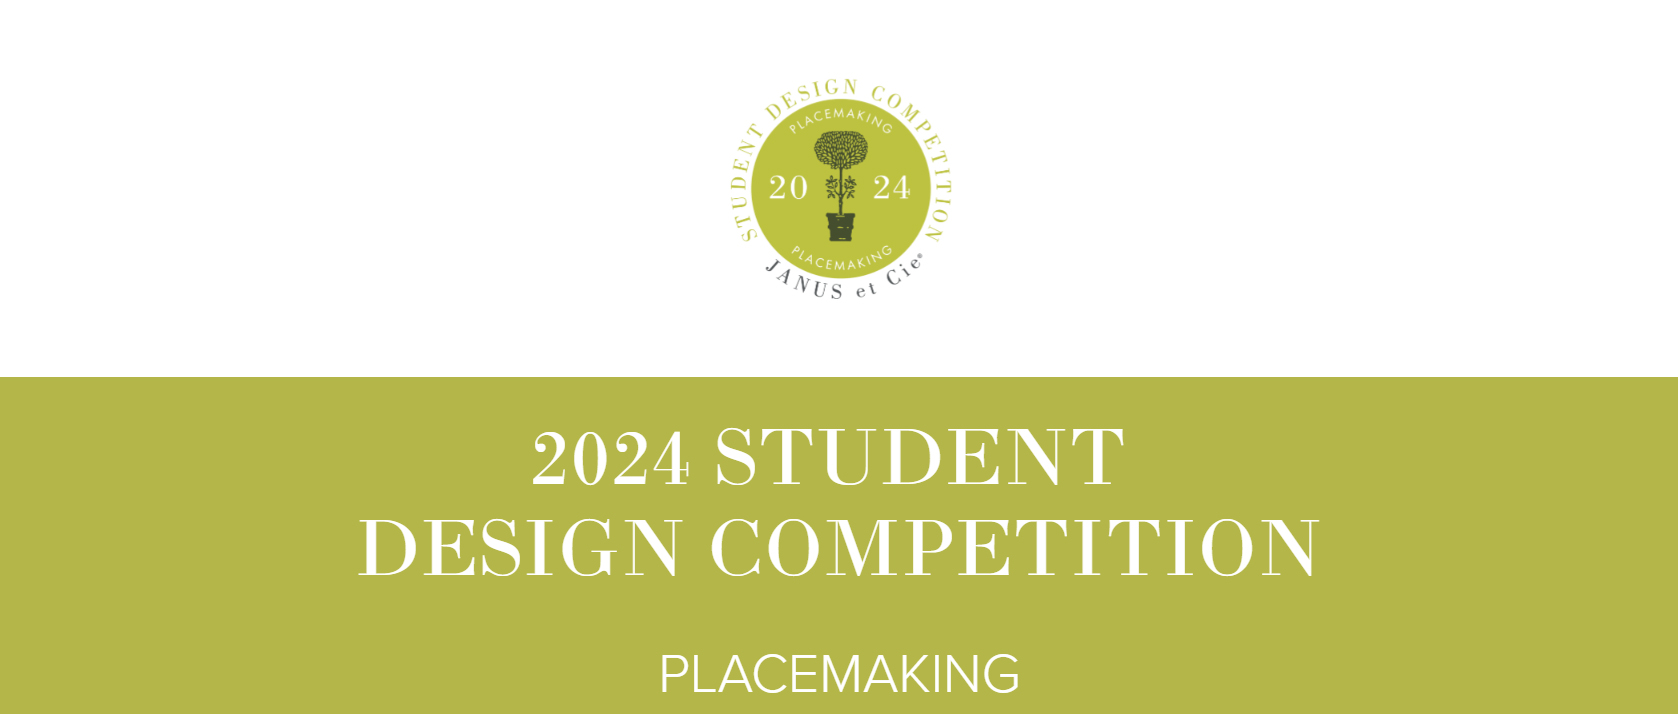 JANUS et CIE 2024 全球学生设计大赛——场所营造